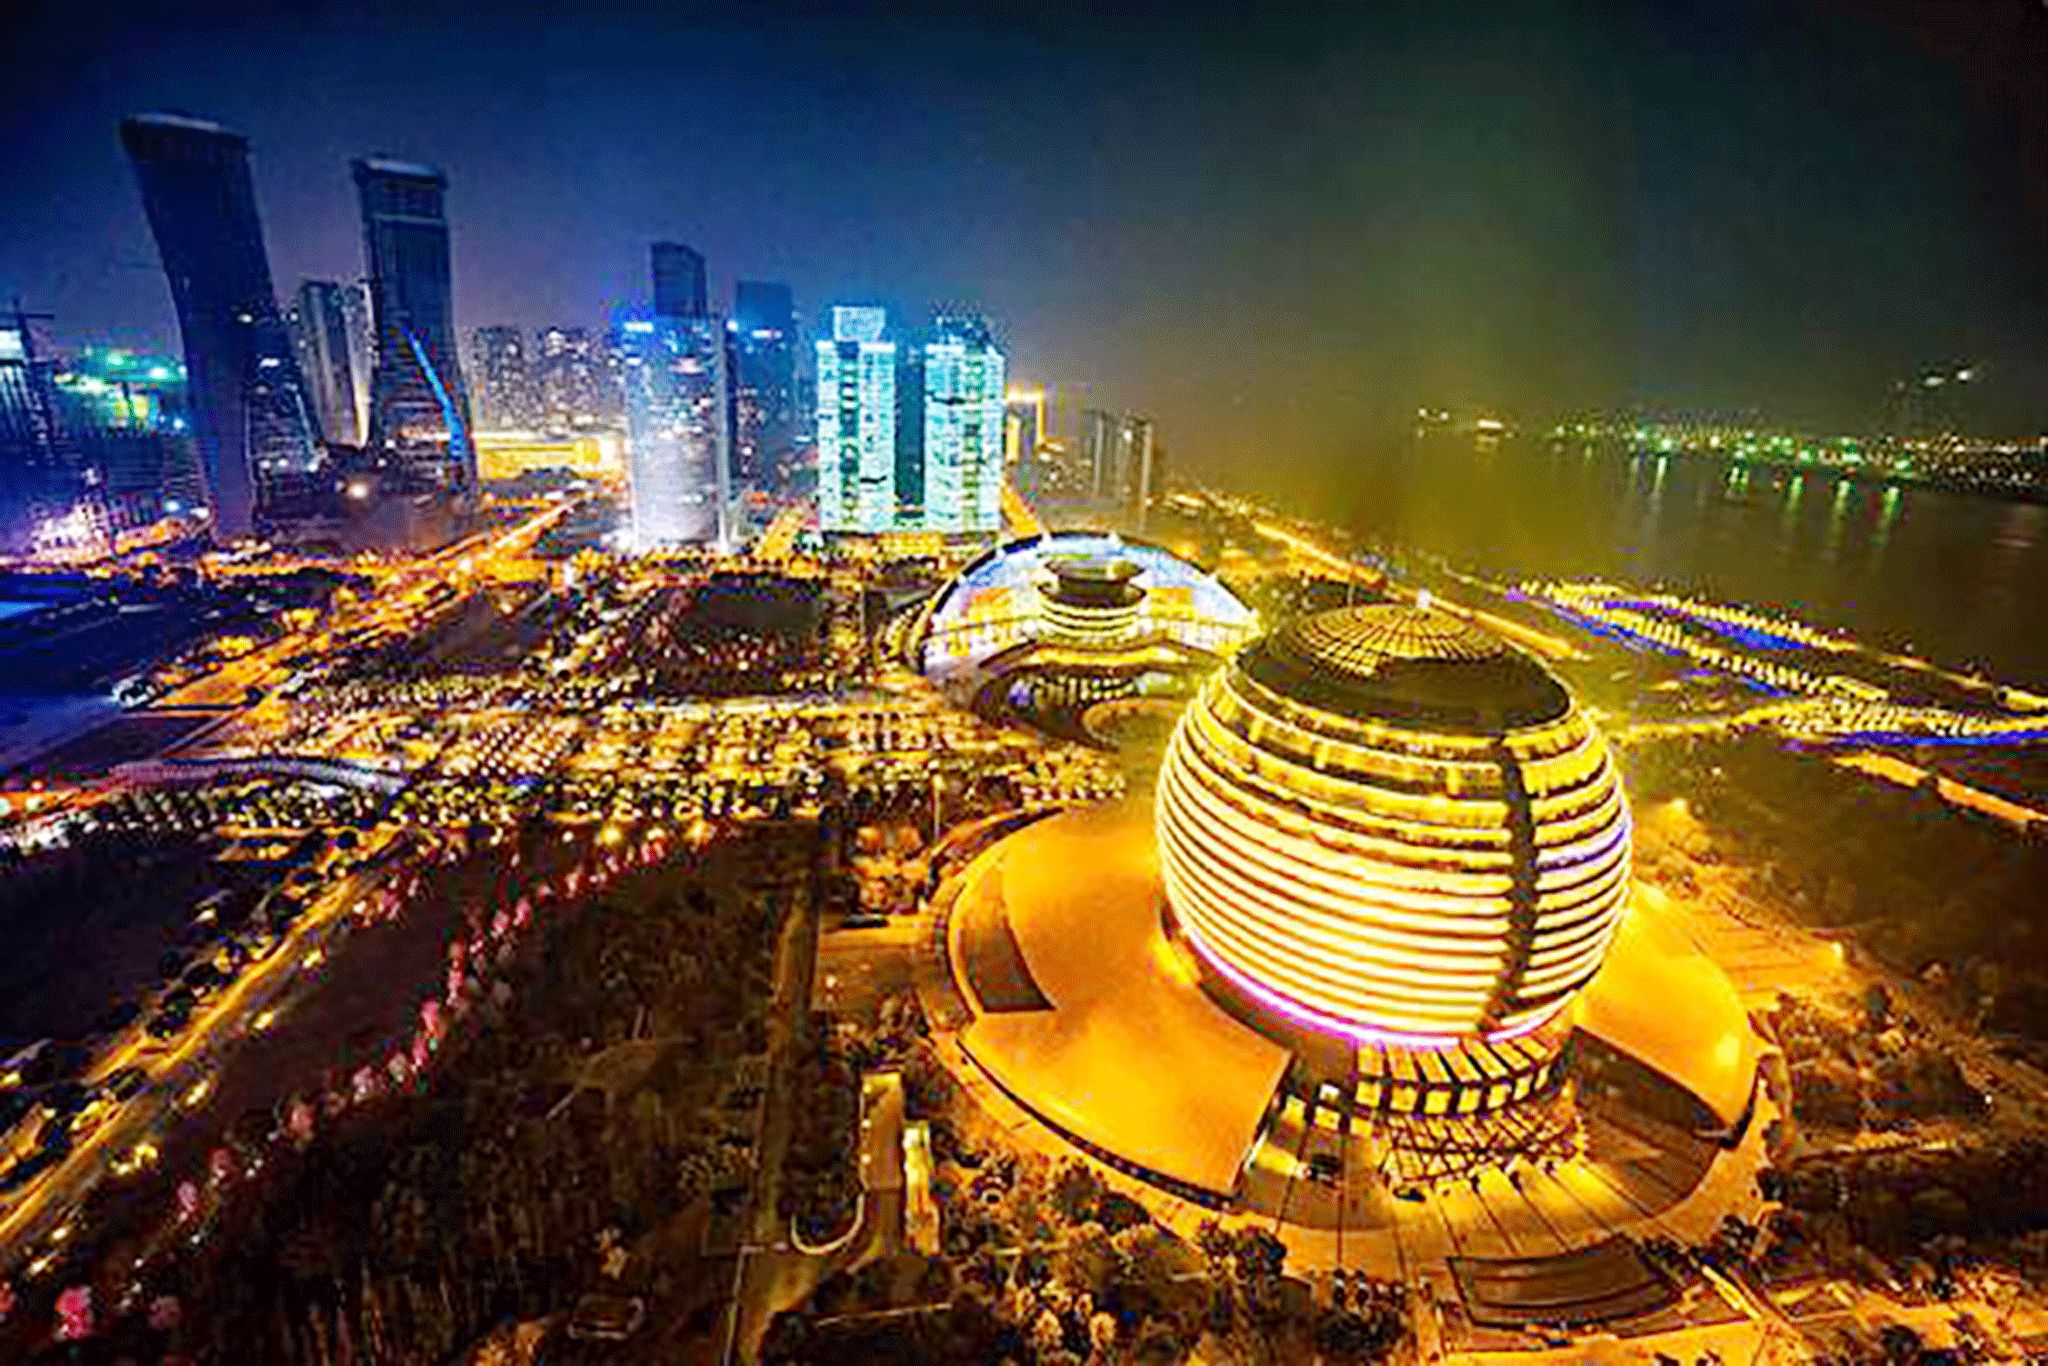 作为杭州的地标,洲际酒店的大金球形象一直为外人所称赞